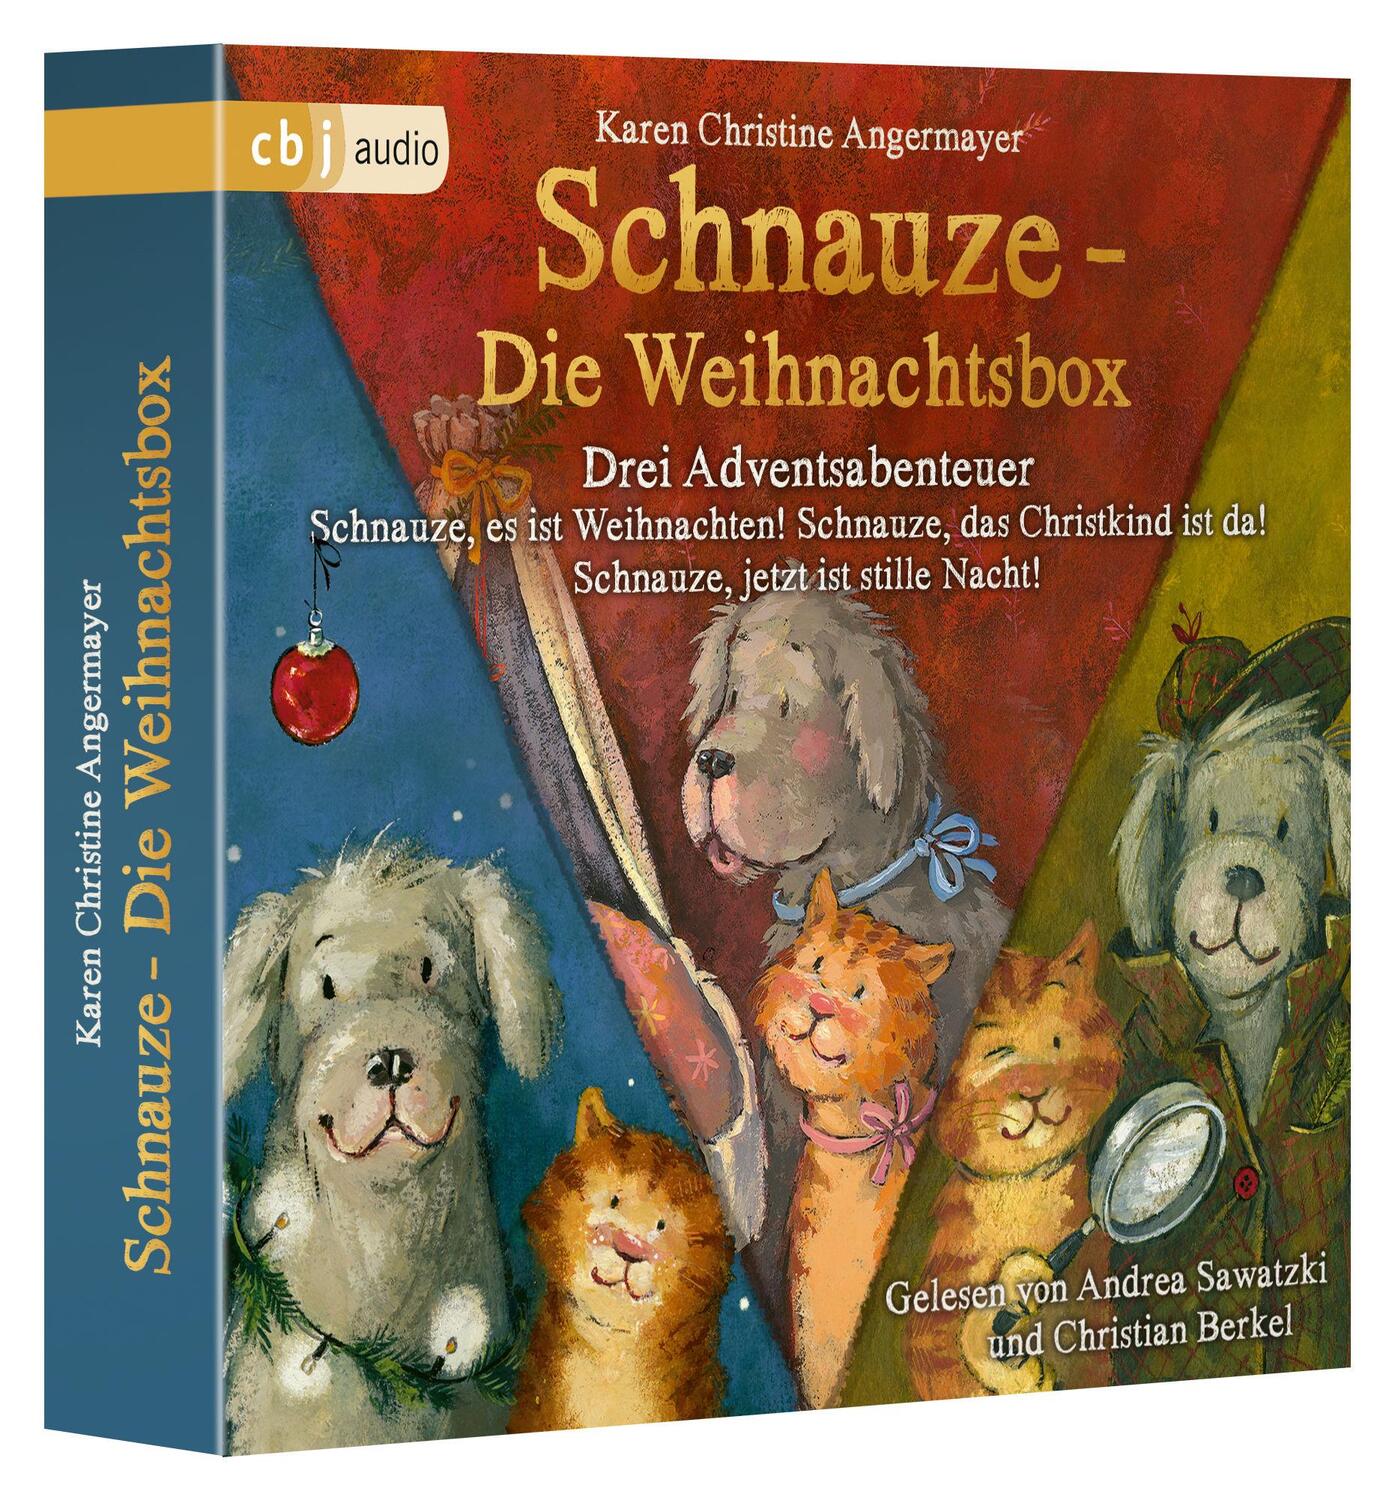 Bild: 9783837149319 | Schnauze - Die Weihnachtsbox | Karen Christine Angermayer | Audio-CD